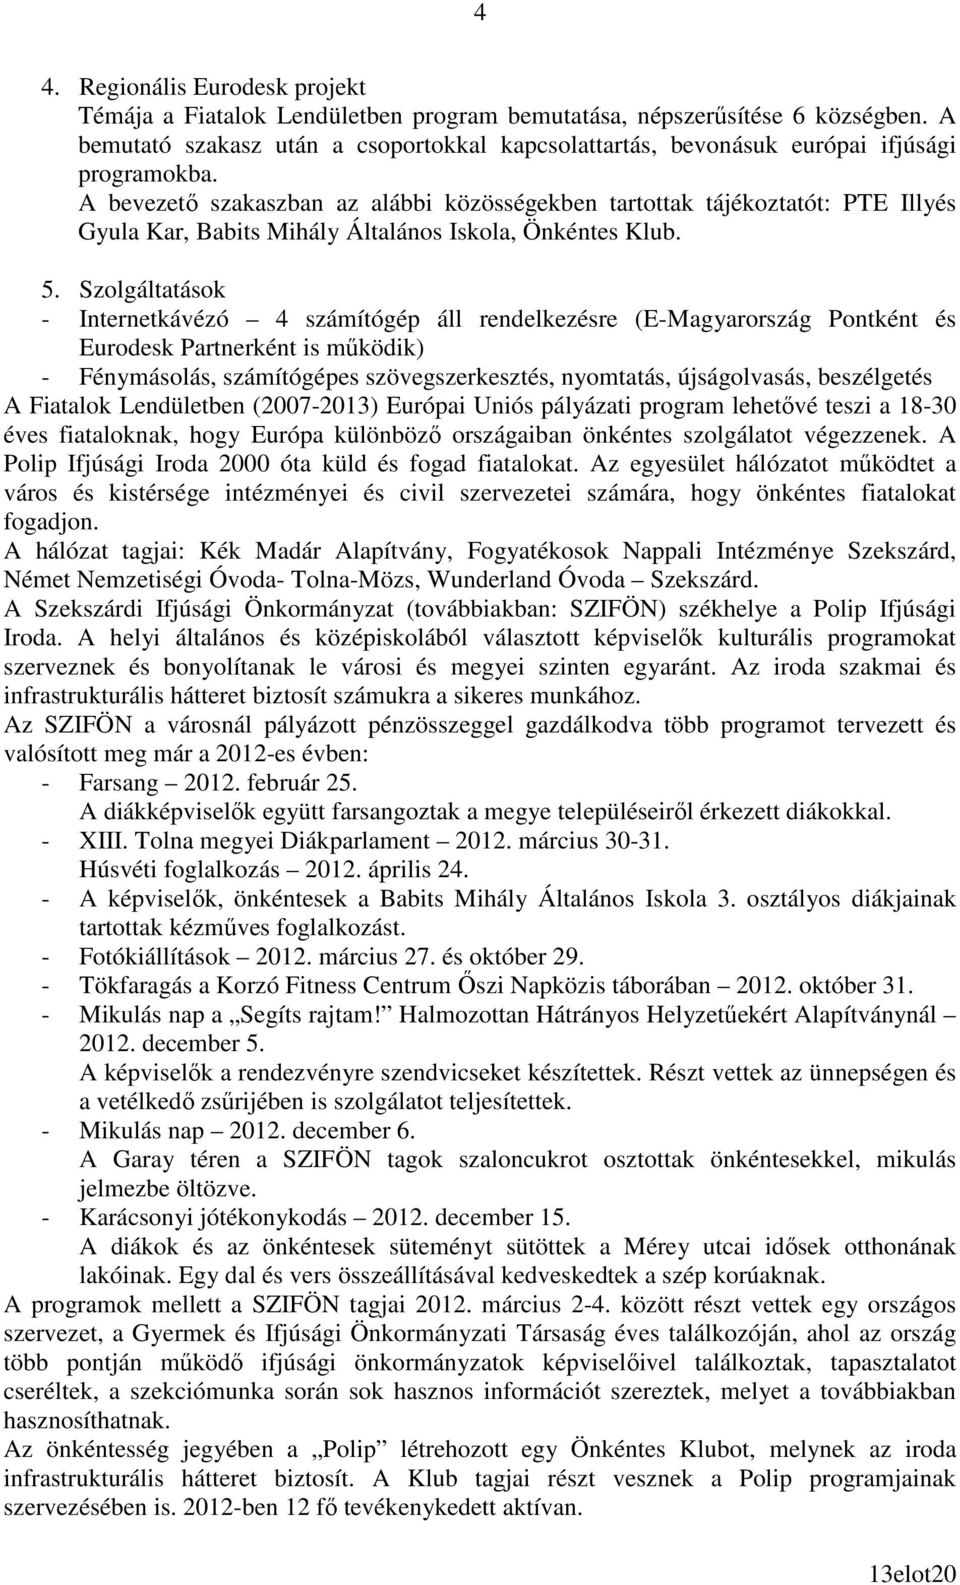 A bevezetı szakaszban az alábbi közösségekben tartottak tájékoztatót: PTE Illyés Gyula Kar, Babits Mihály Általános Iskola, Önkéntes Klub. 5.